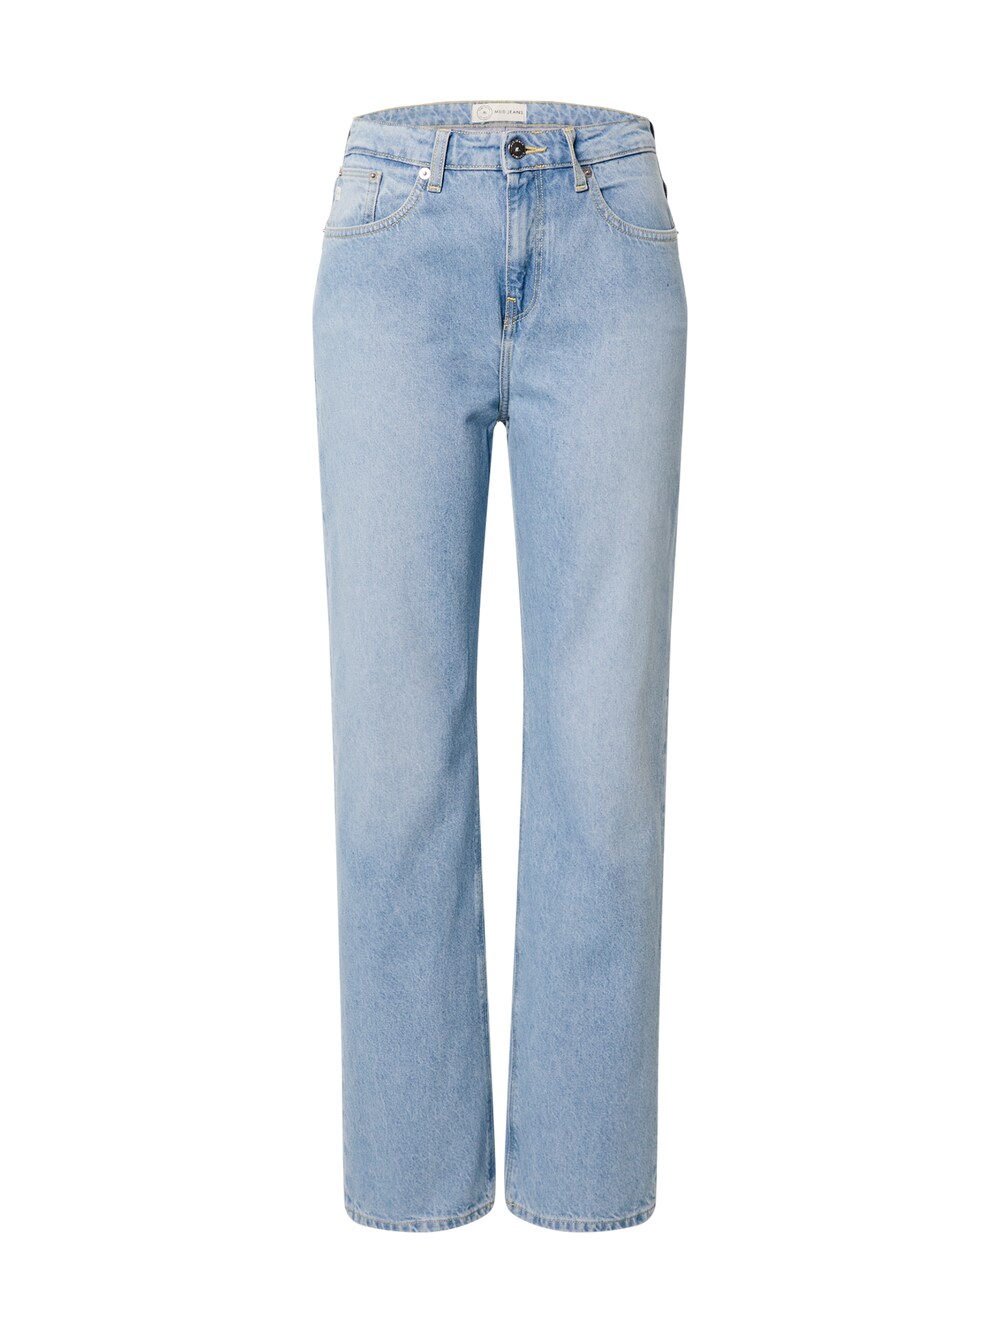 Широкие джинсы Mud Jeans Rose, синий